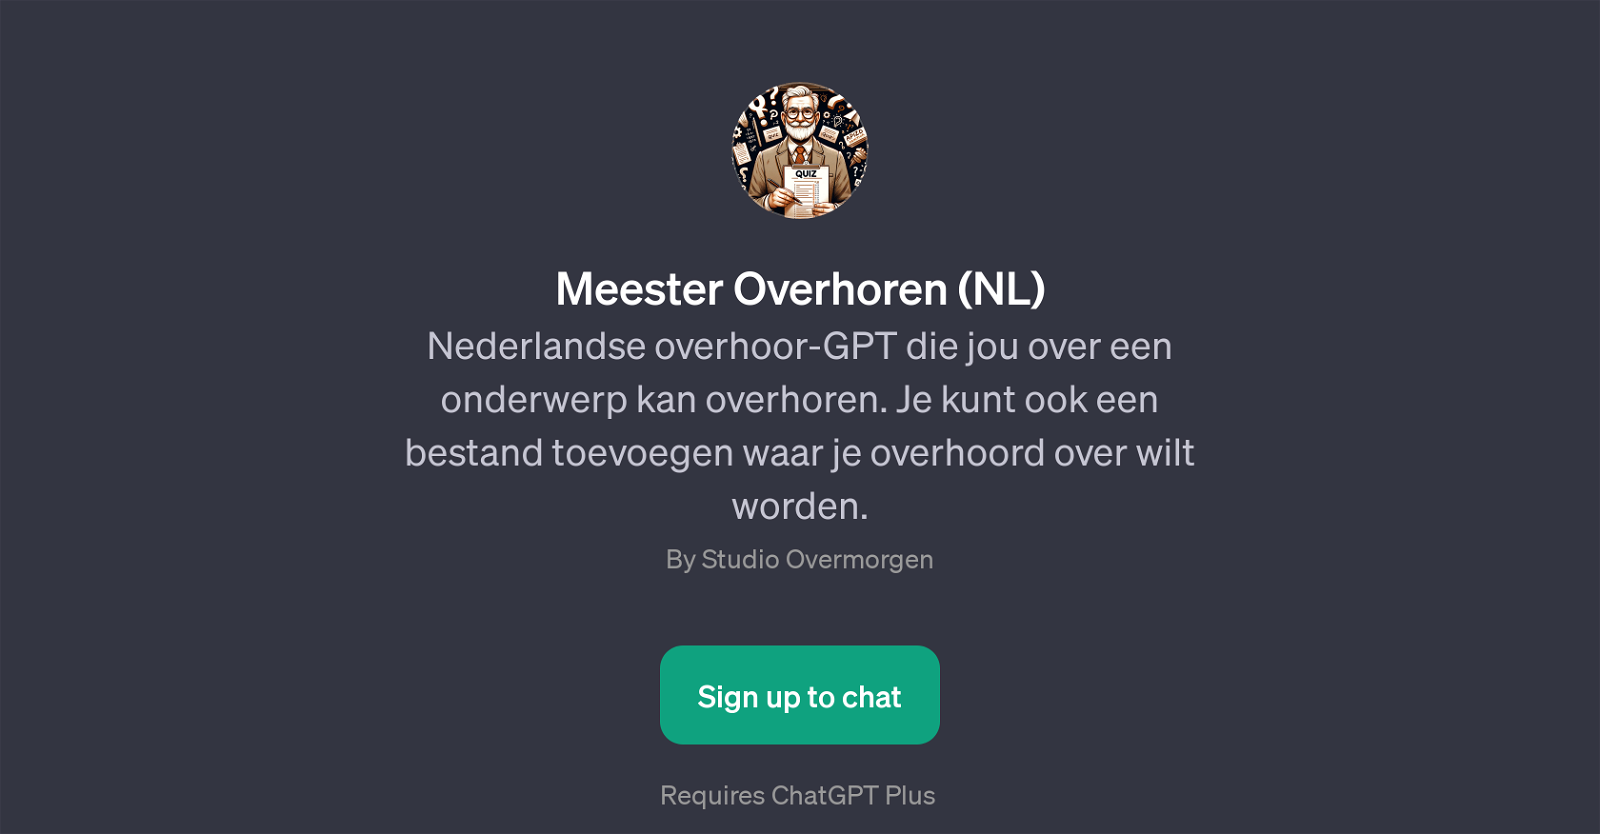 Meester Overhoren (NL) website